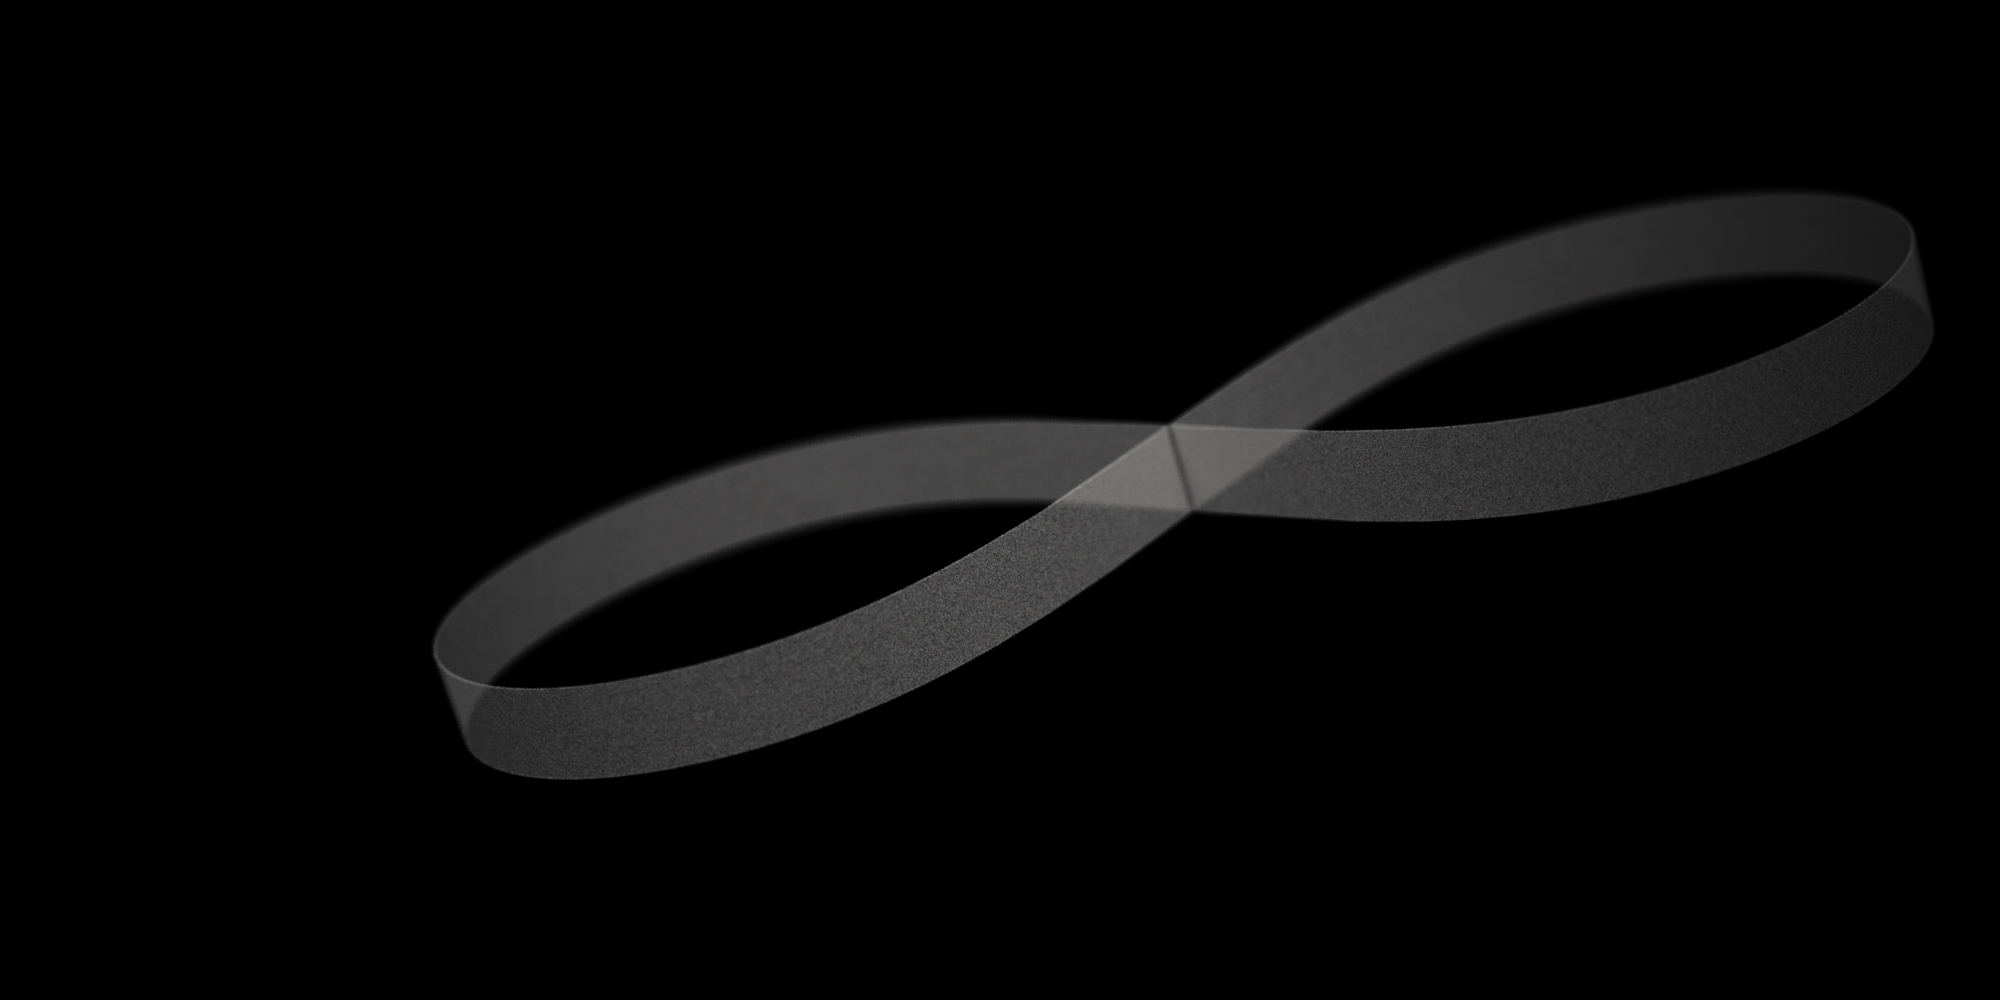 Weißes Unendlichzeichen auf schwarzem Hintergrund, das den kontinuierlichen Fluss von Daten in einem digital transformierten Unternehmen symbolisiert